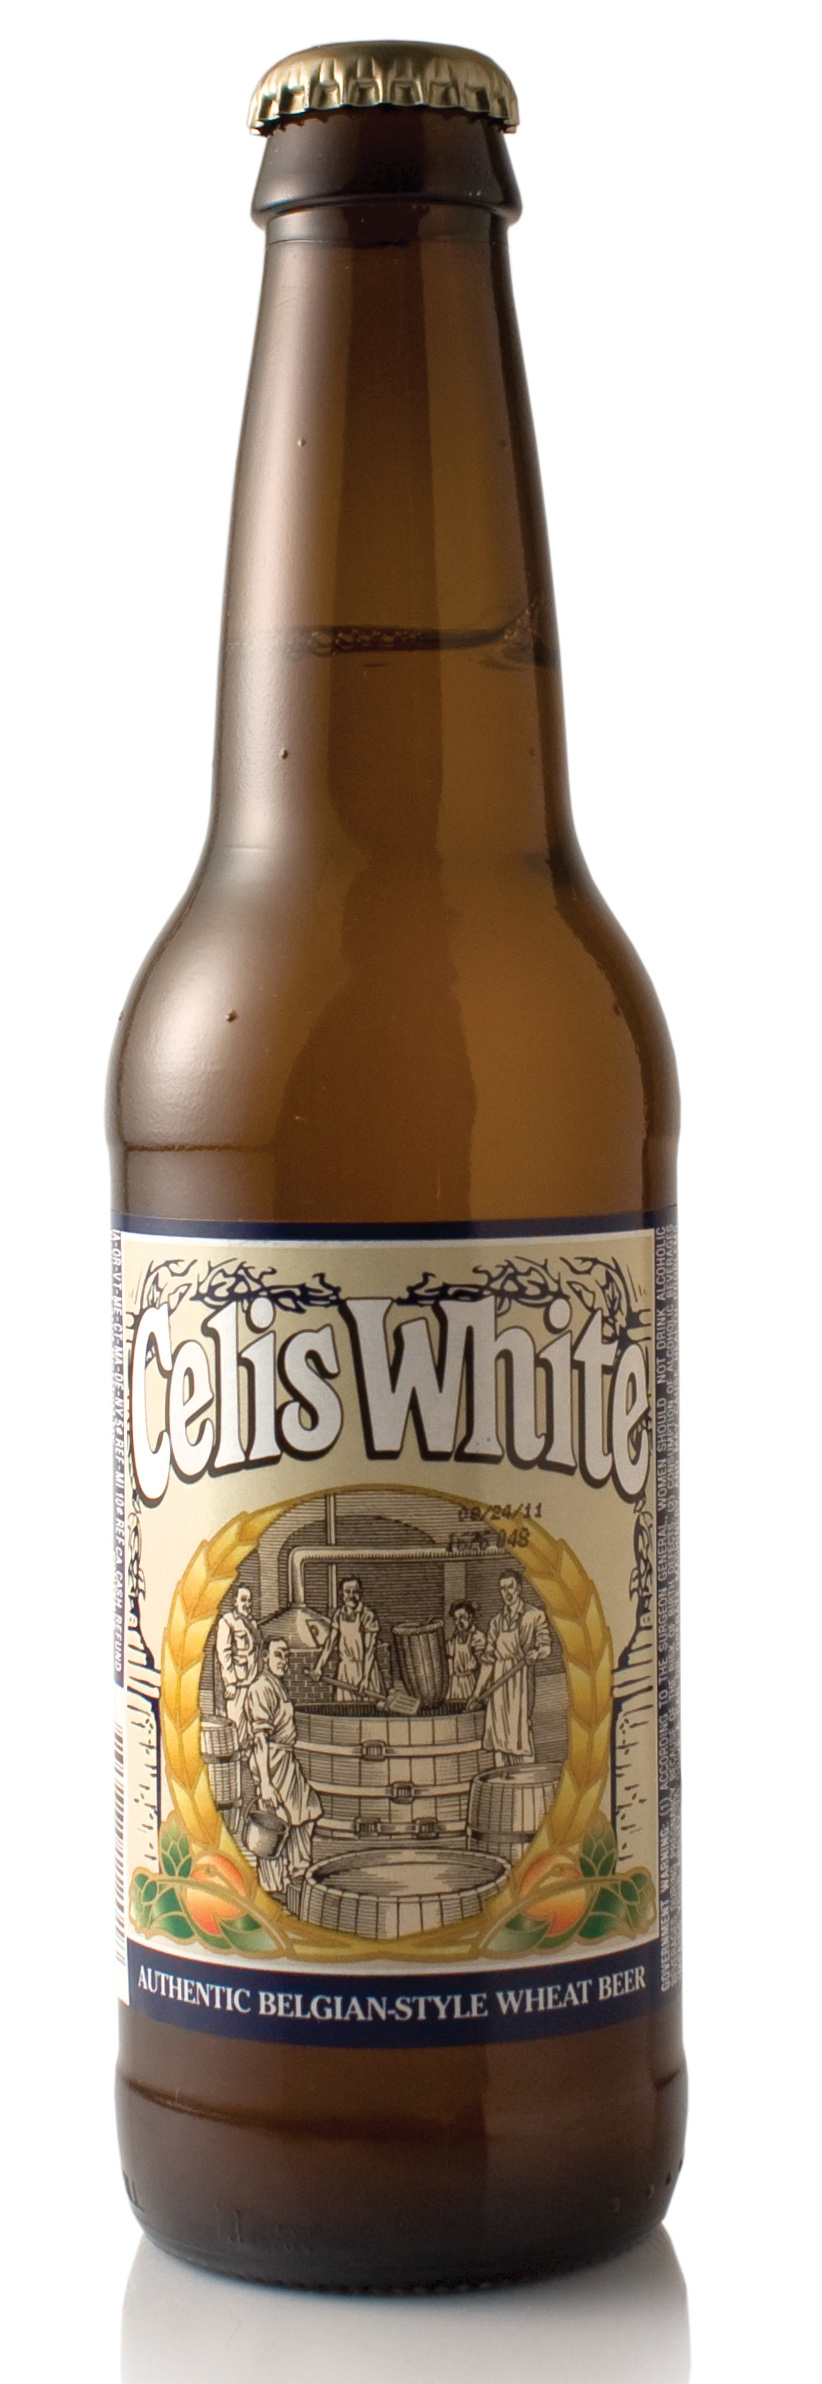 топ пива Celis white обзор / оценка / отзывы